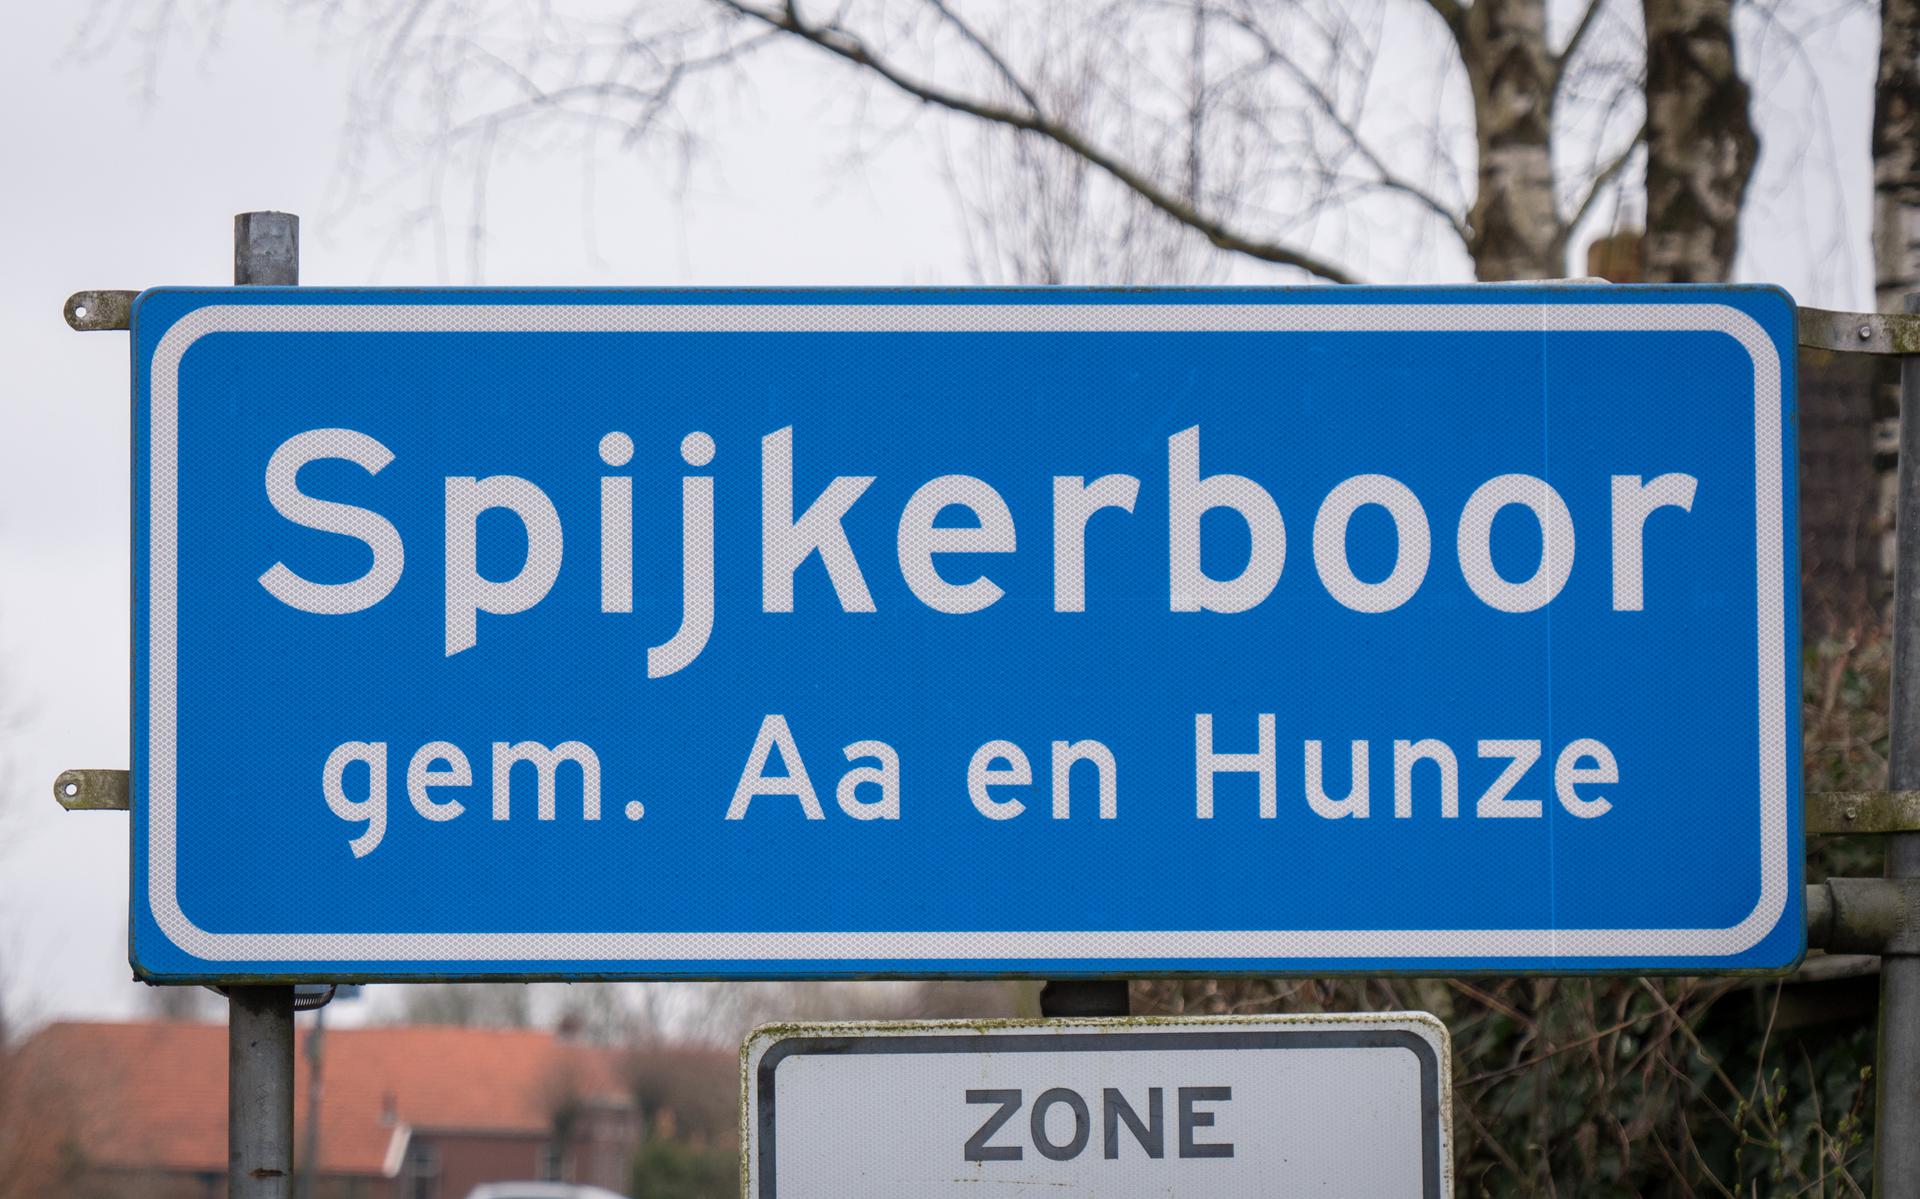 Opnieuw overlegde de gemeenteraad van Aa en Hunze over een fietspad tussen Spijkerboor en Eexterveen. 